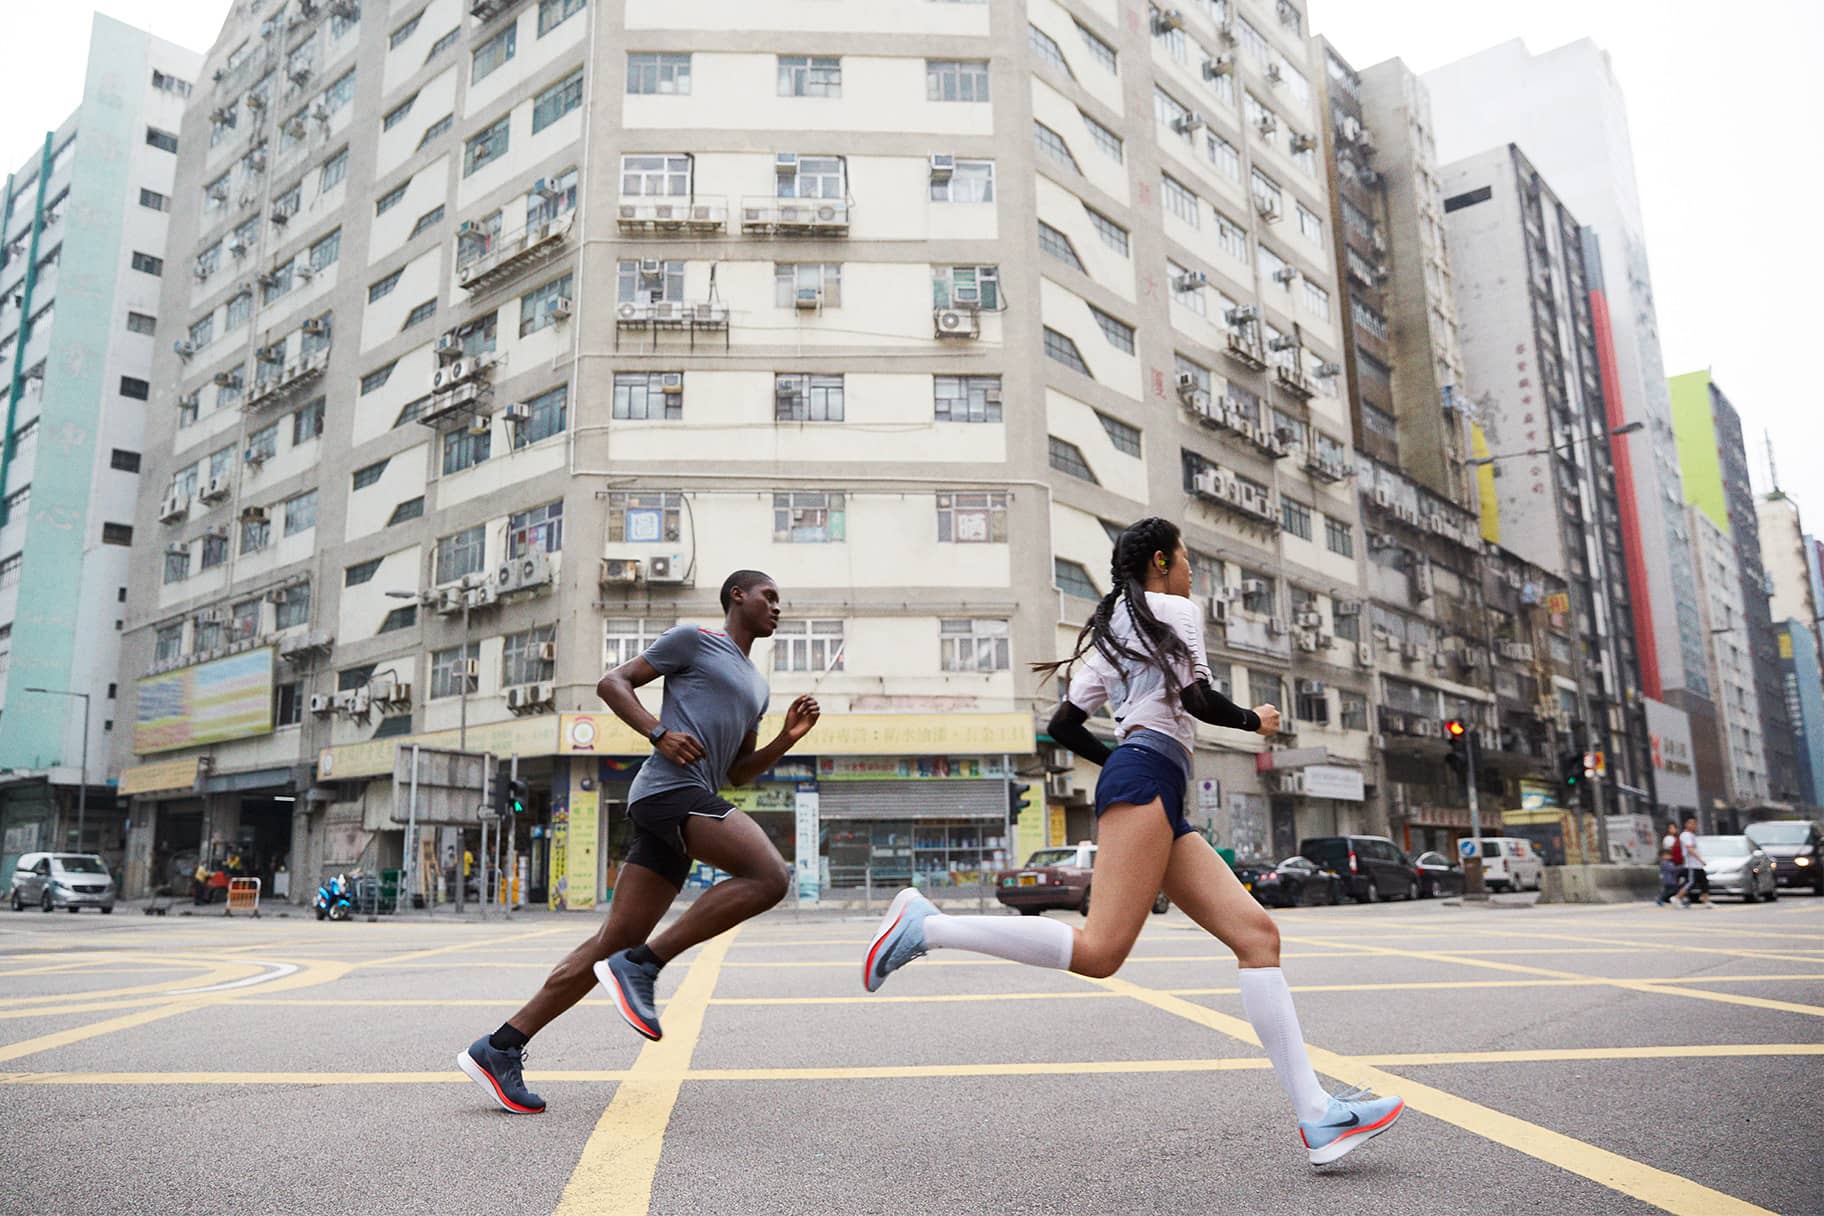 Comment adopter la bonne posture de running selon les experts